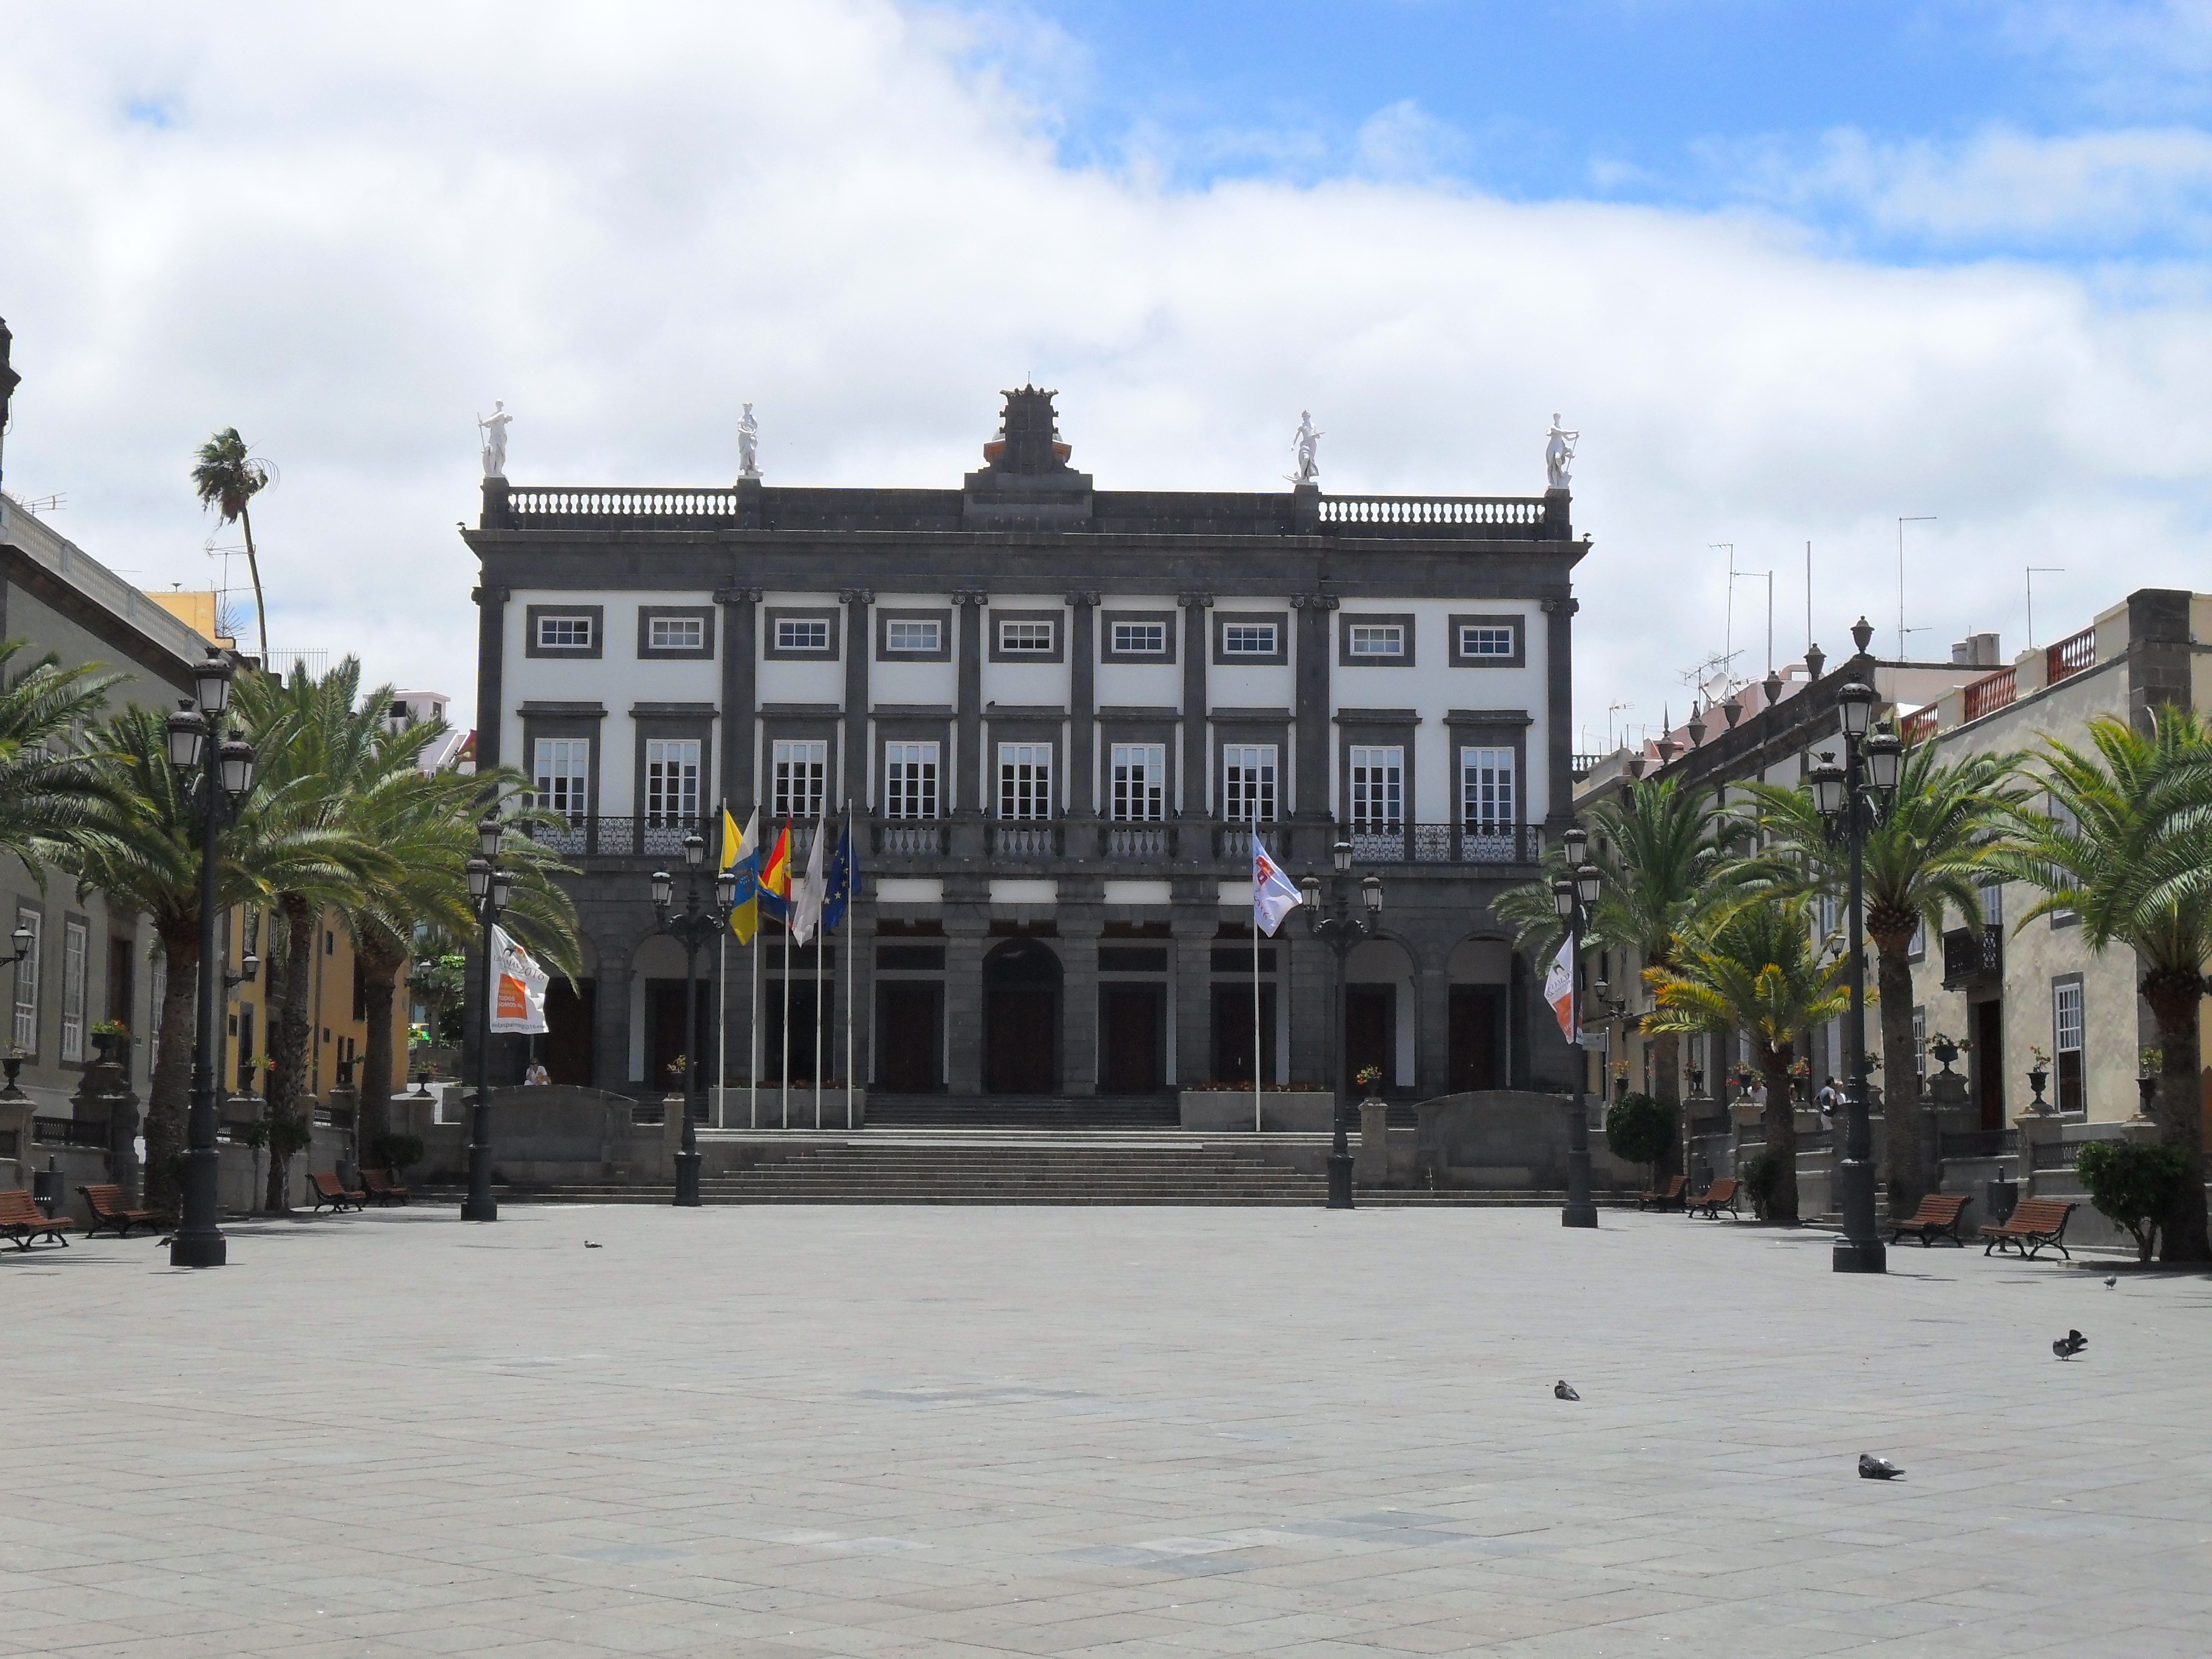 Casas Consistoriales de Las Palmas de Gran Canaria - Wikipedia, la ...